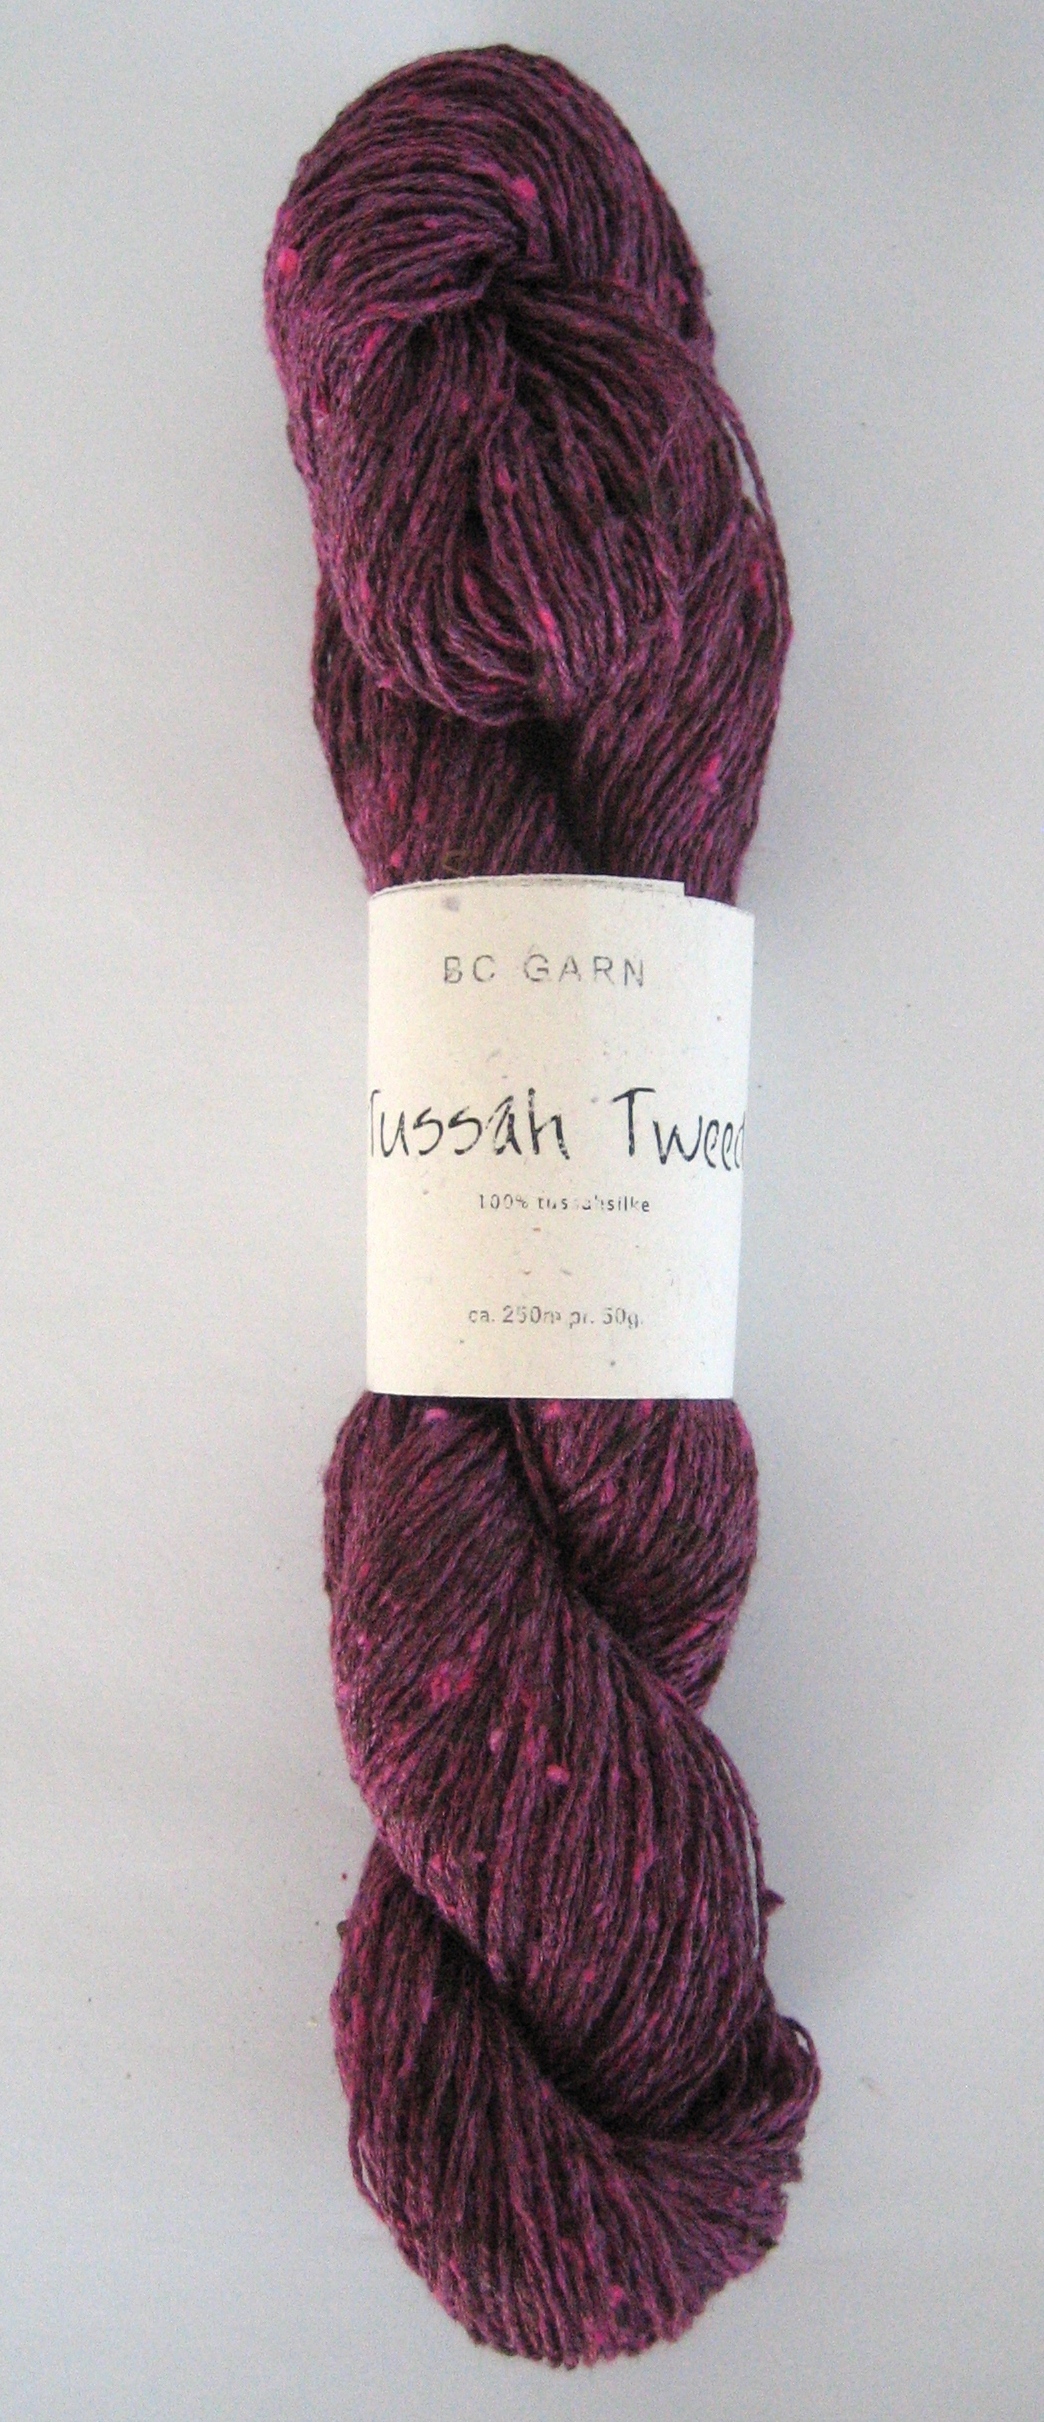 bc-garn-tussah-tweed-silke